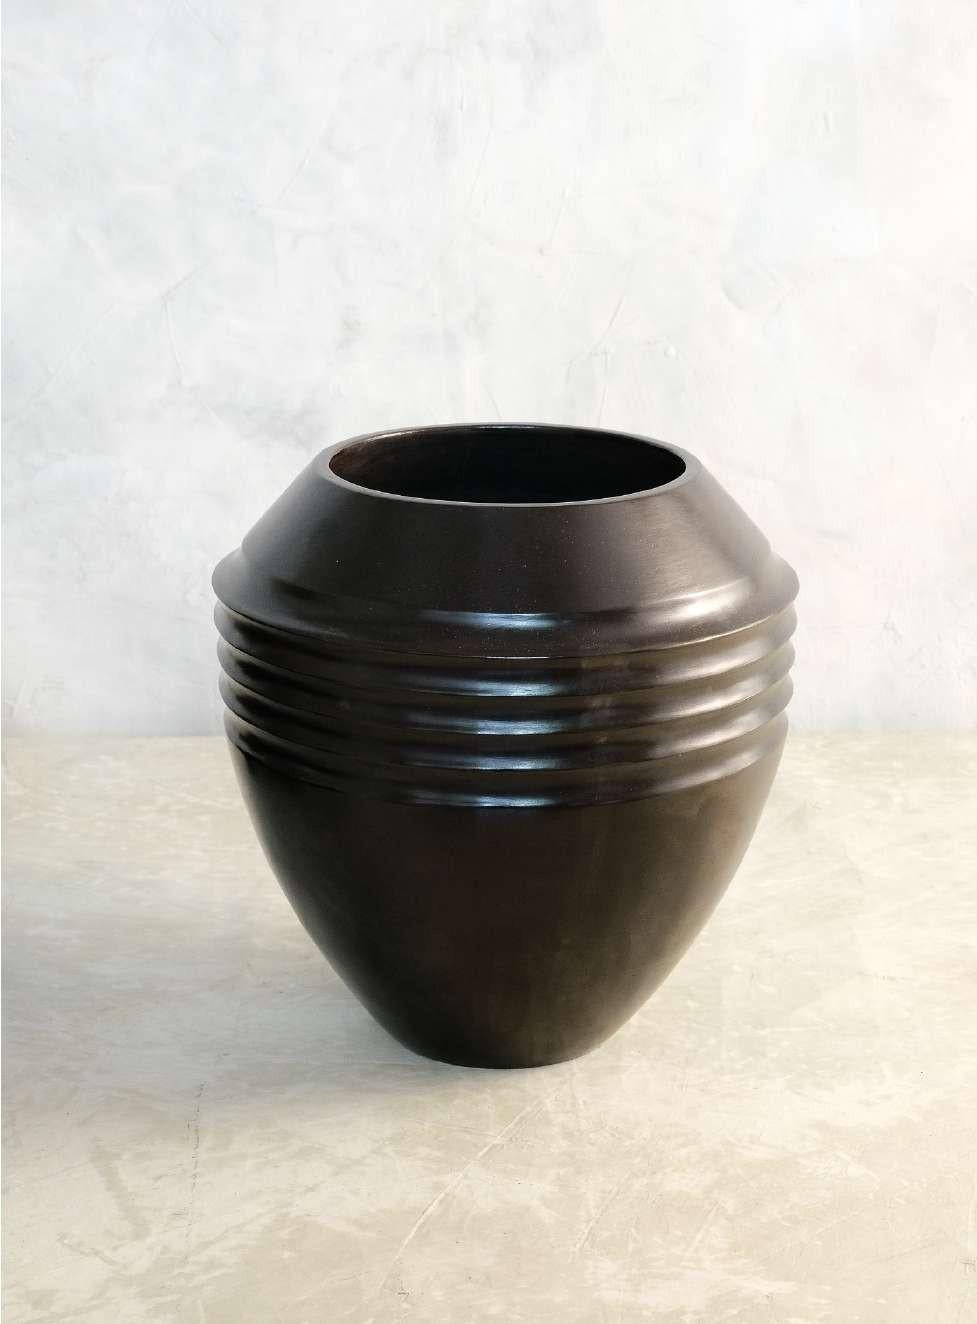 Vase Cascabel d'Onora
Dimensions : D 30 x H 28 cm
Matériaux : Argile

Cette collection réinterprète l'une des plus anciennes techniques structurelles de la poterie, l'enroulement. Les récipients réalisés avec cette technique sont faits de